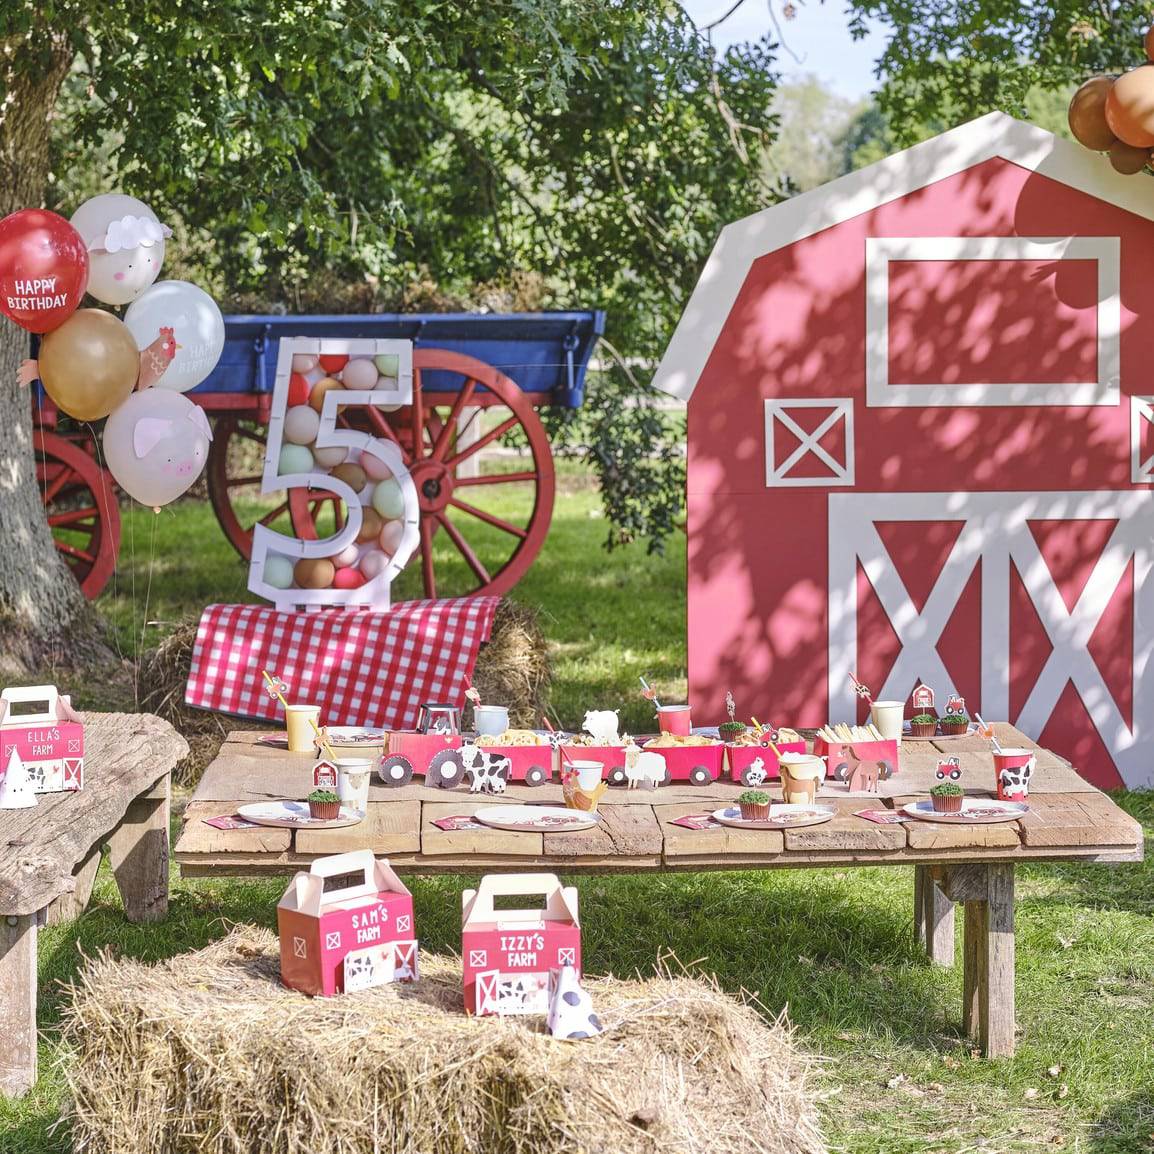 Bauernhof Animal Ballons GingerRay - Der Backmichgluecklich Online Shop